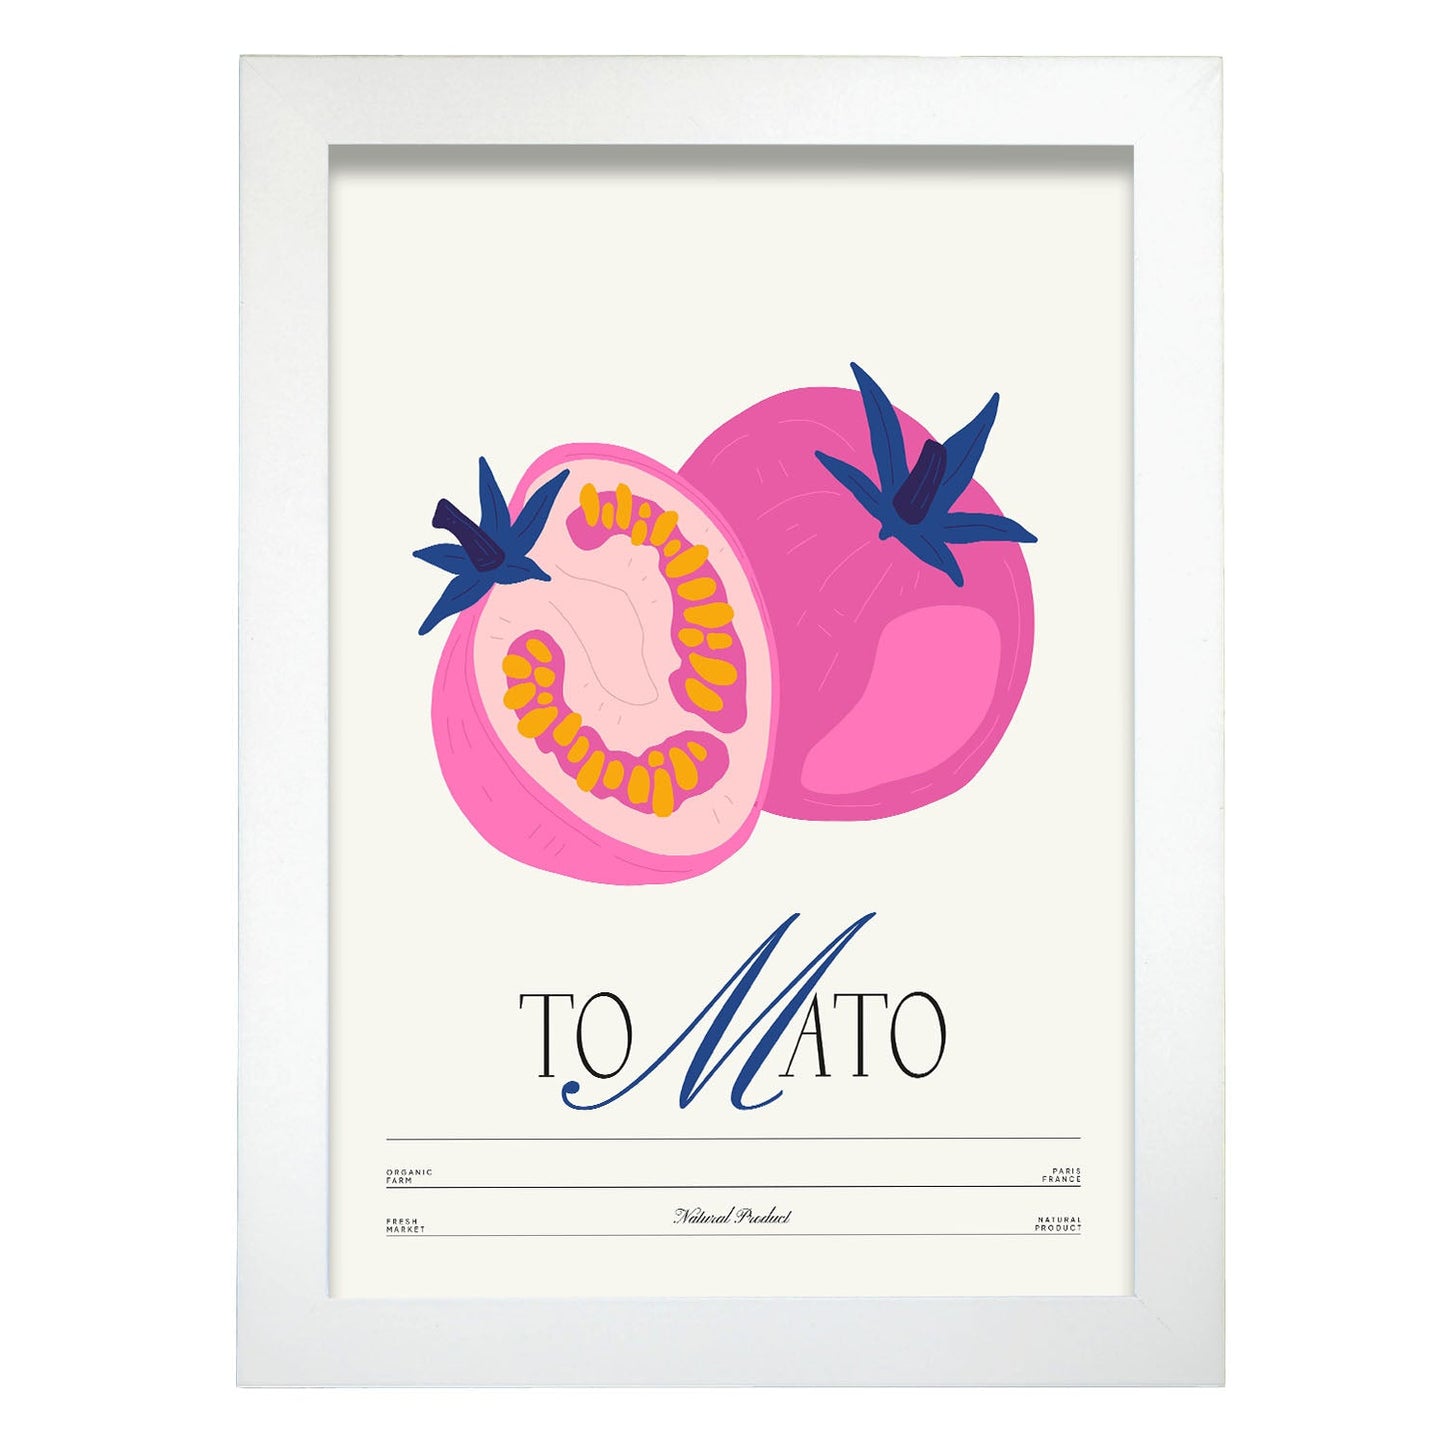 Tomato-Artwork-Nacnic-A4-Marco Blanco-Nacnic Estudio SL